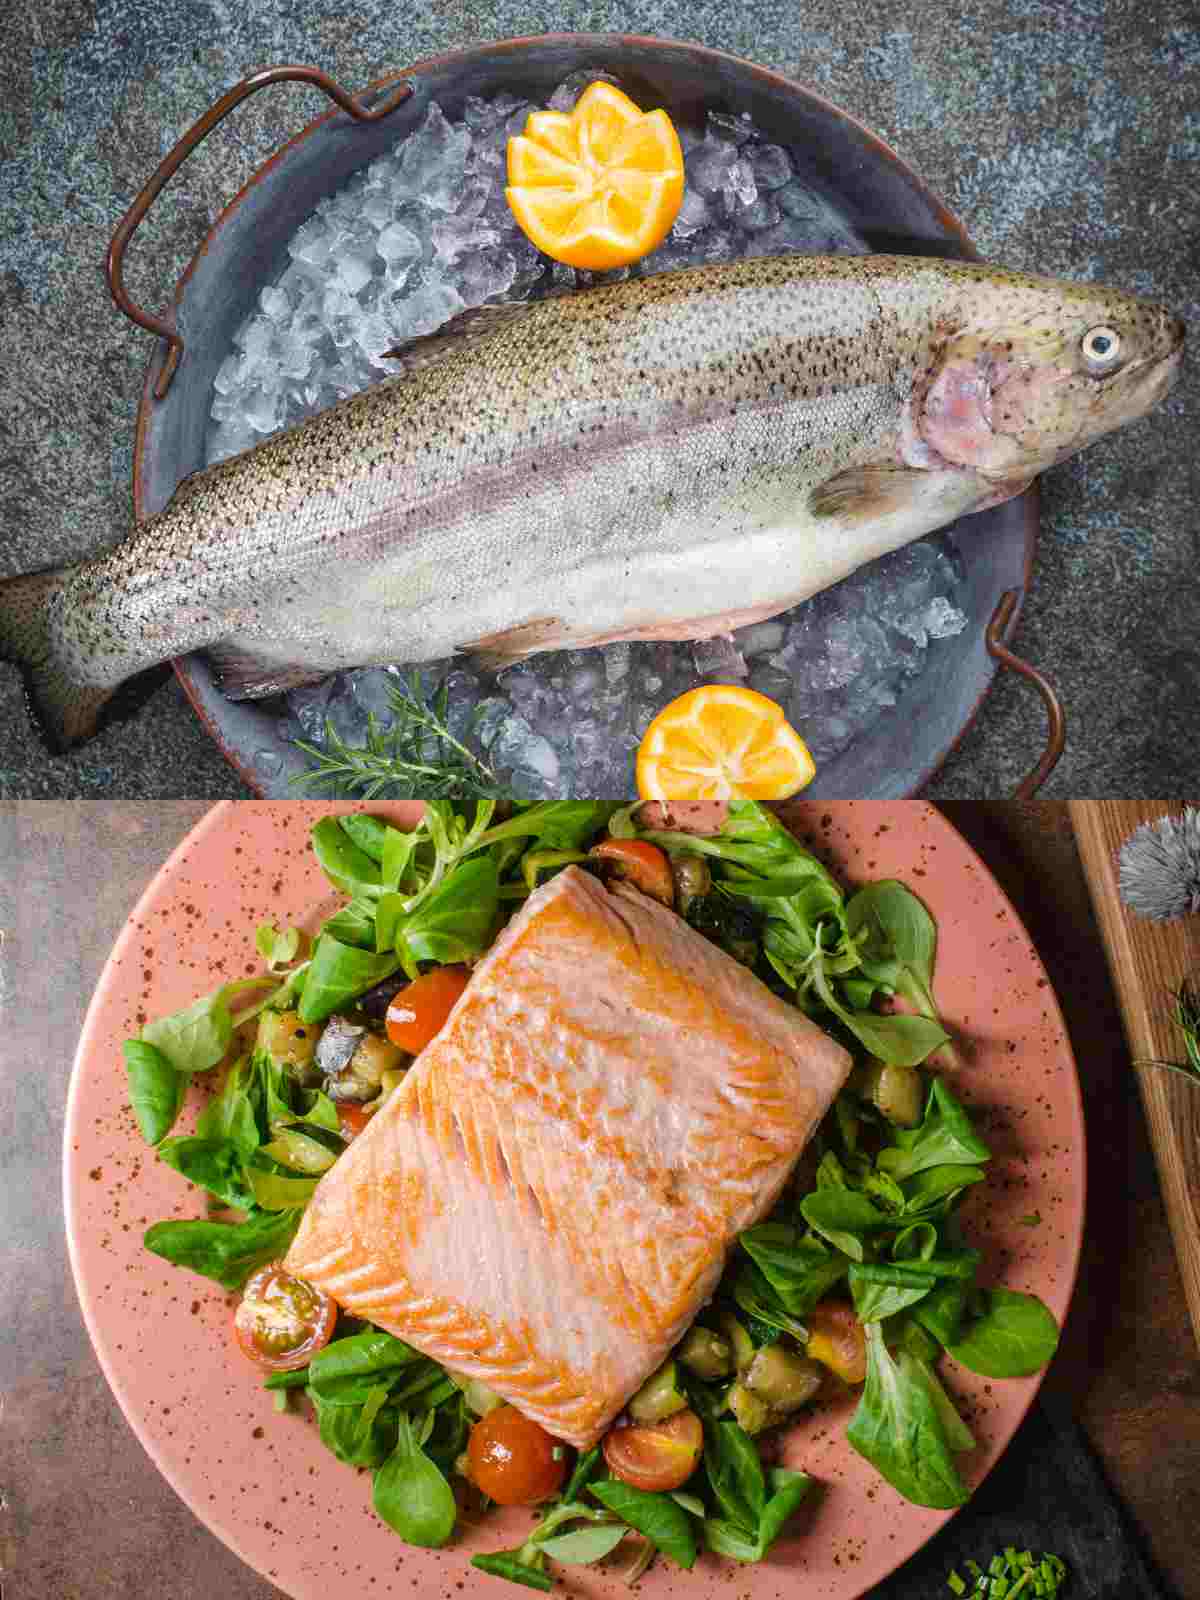 trout vs salmon